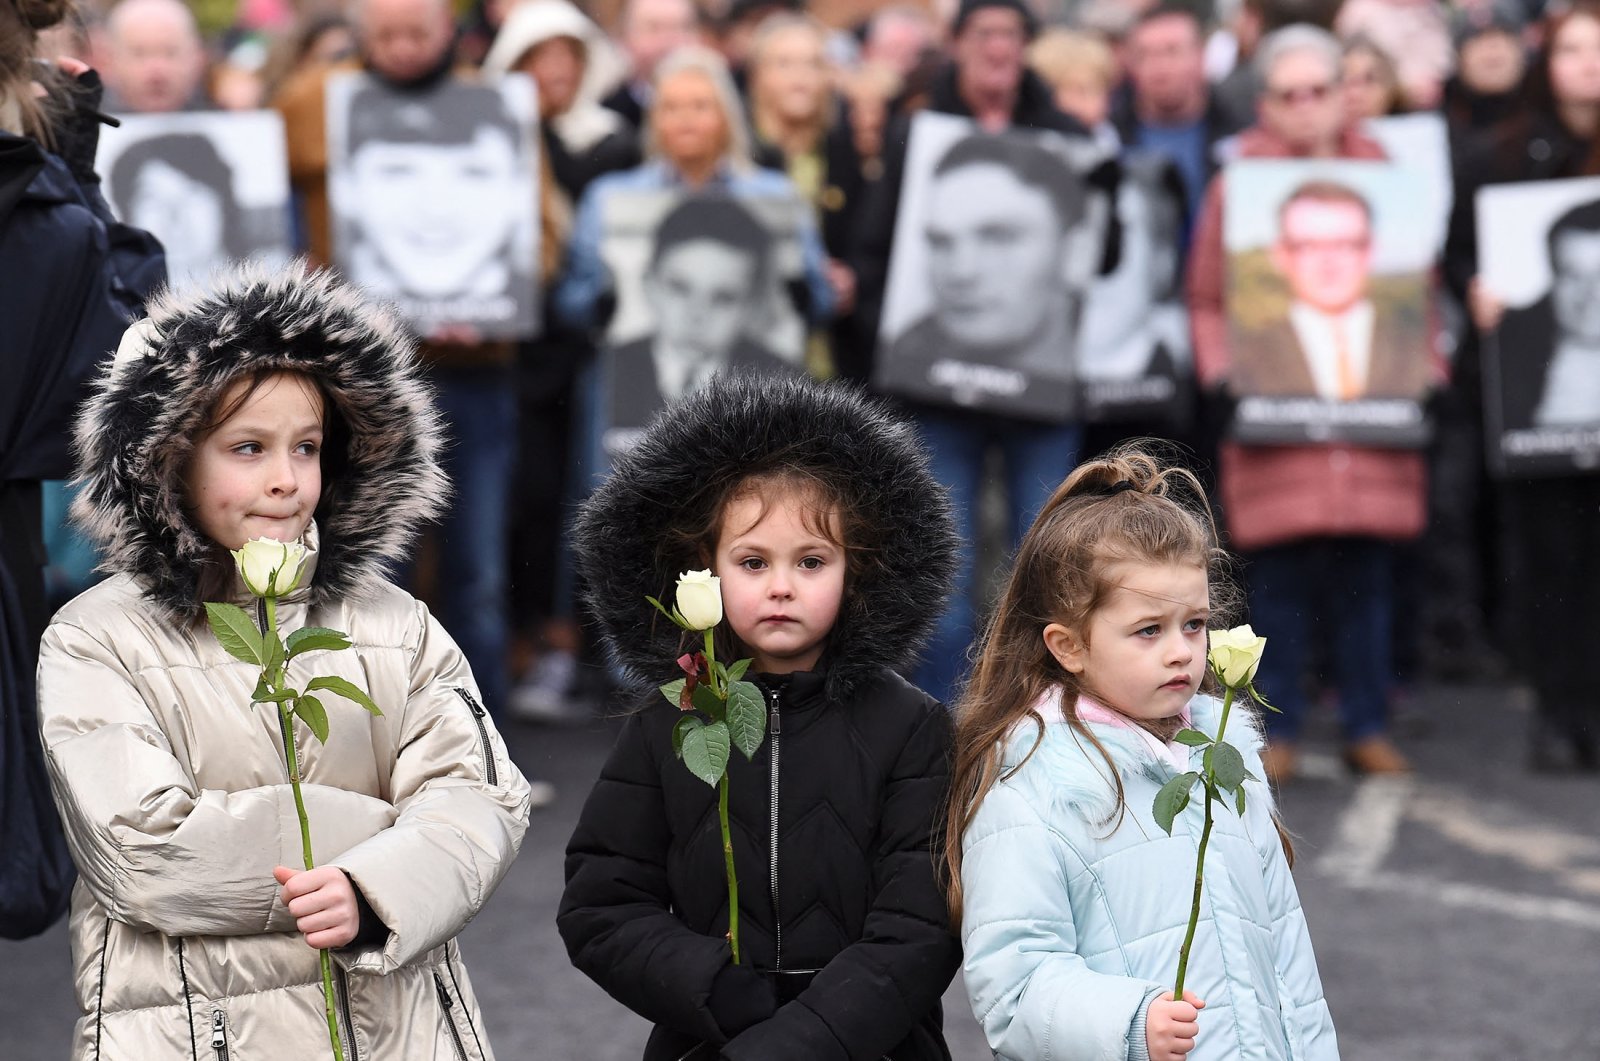 N. Ireland mengenang para korban ‘Bloody Sunday’ pada peringatan 50 tahun